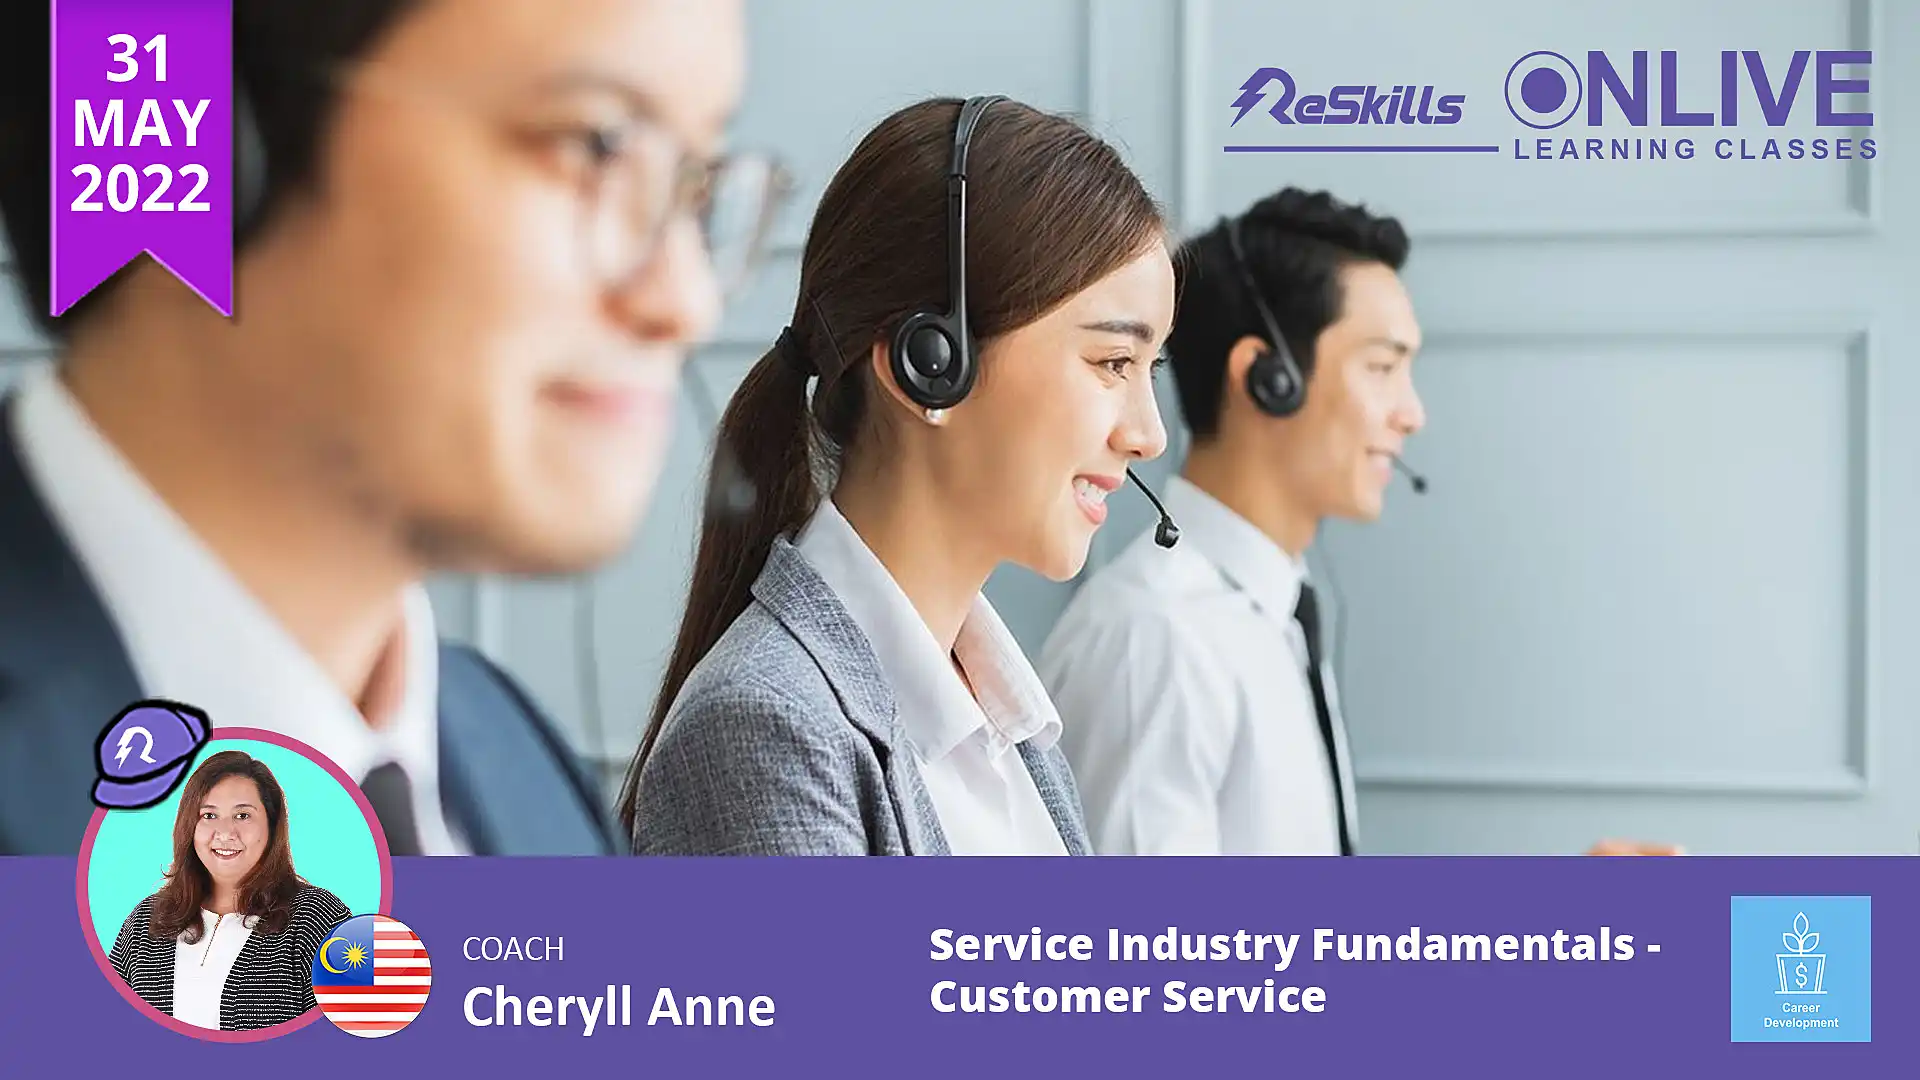 Service Industry Fundamentals - Customer Service - ReSkills